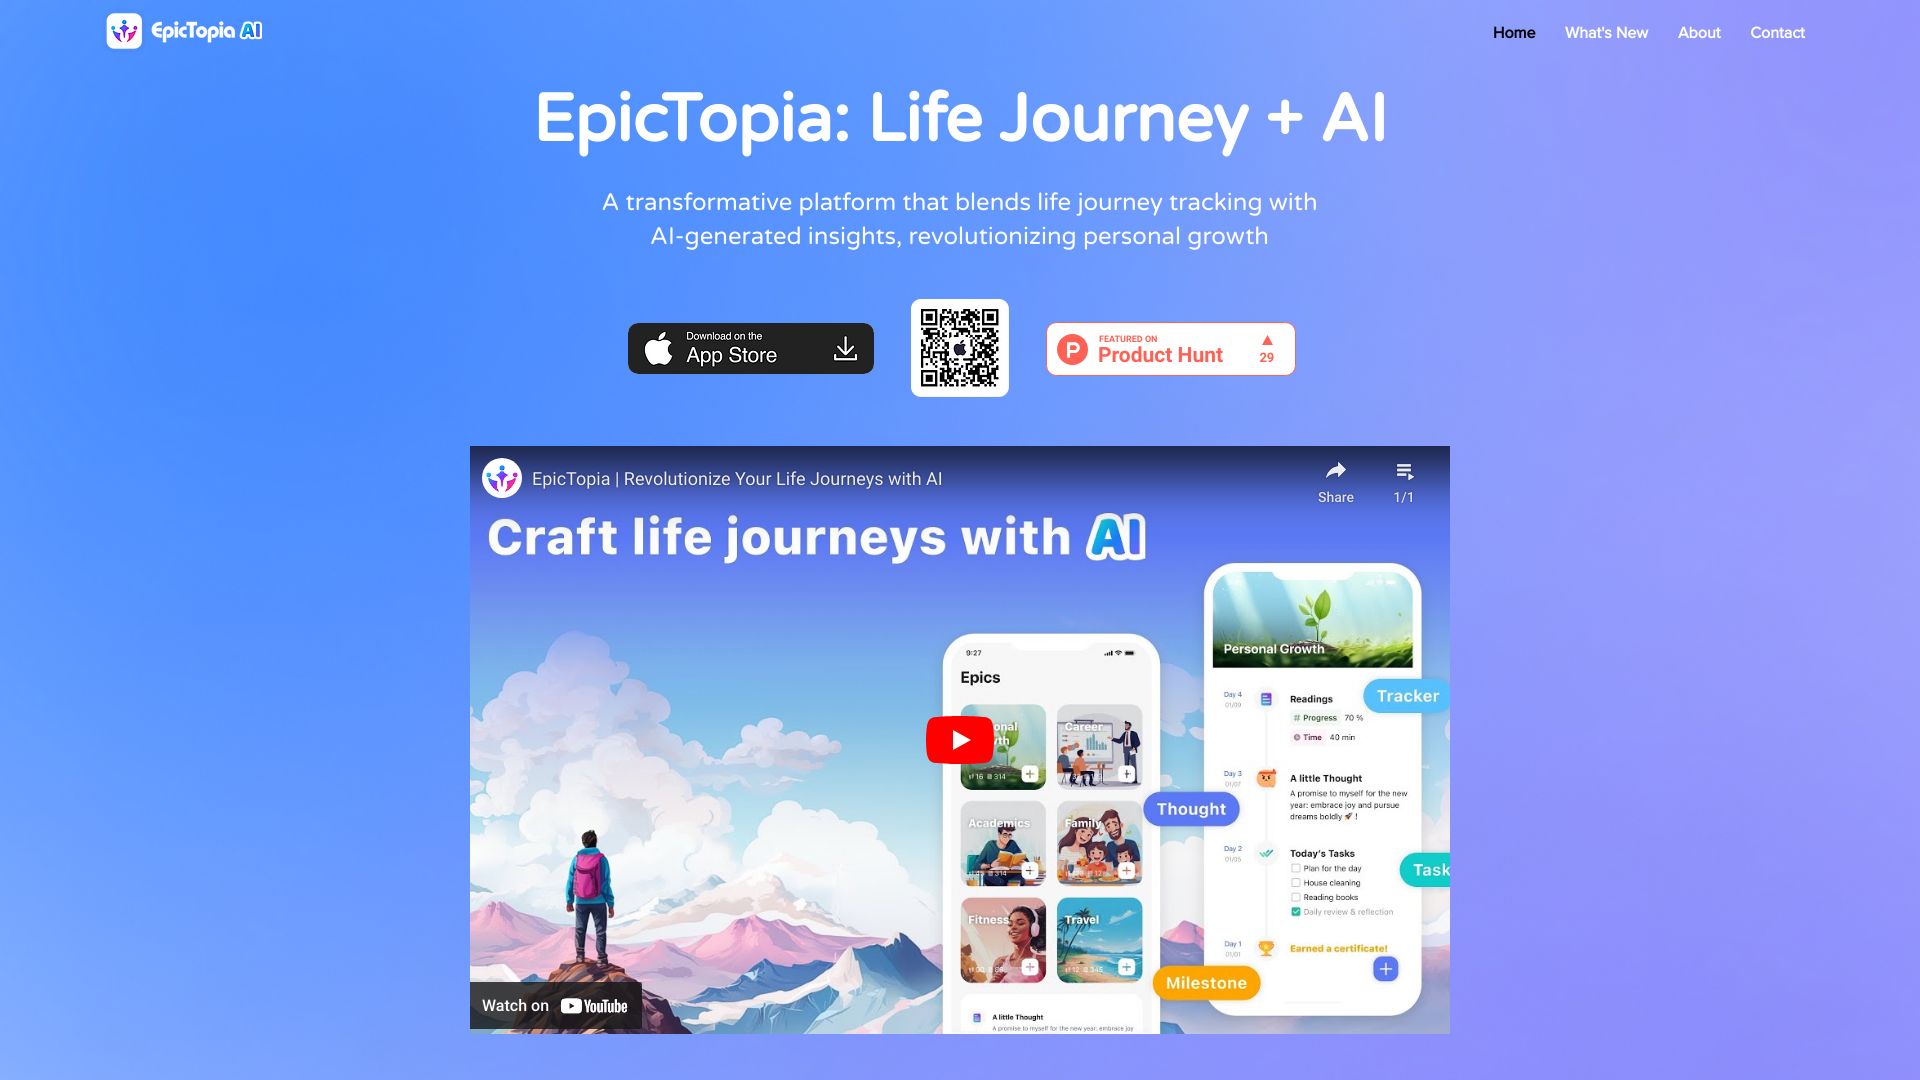 EpicTopia AI